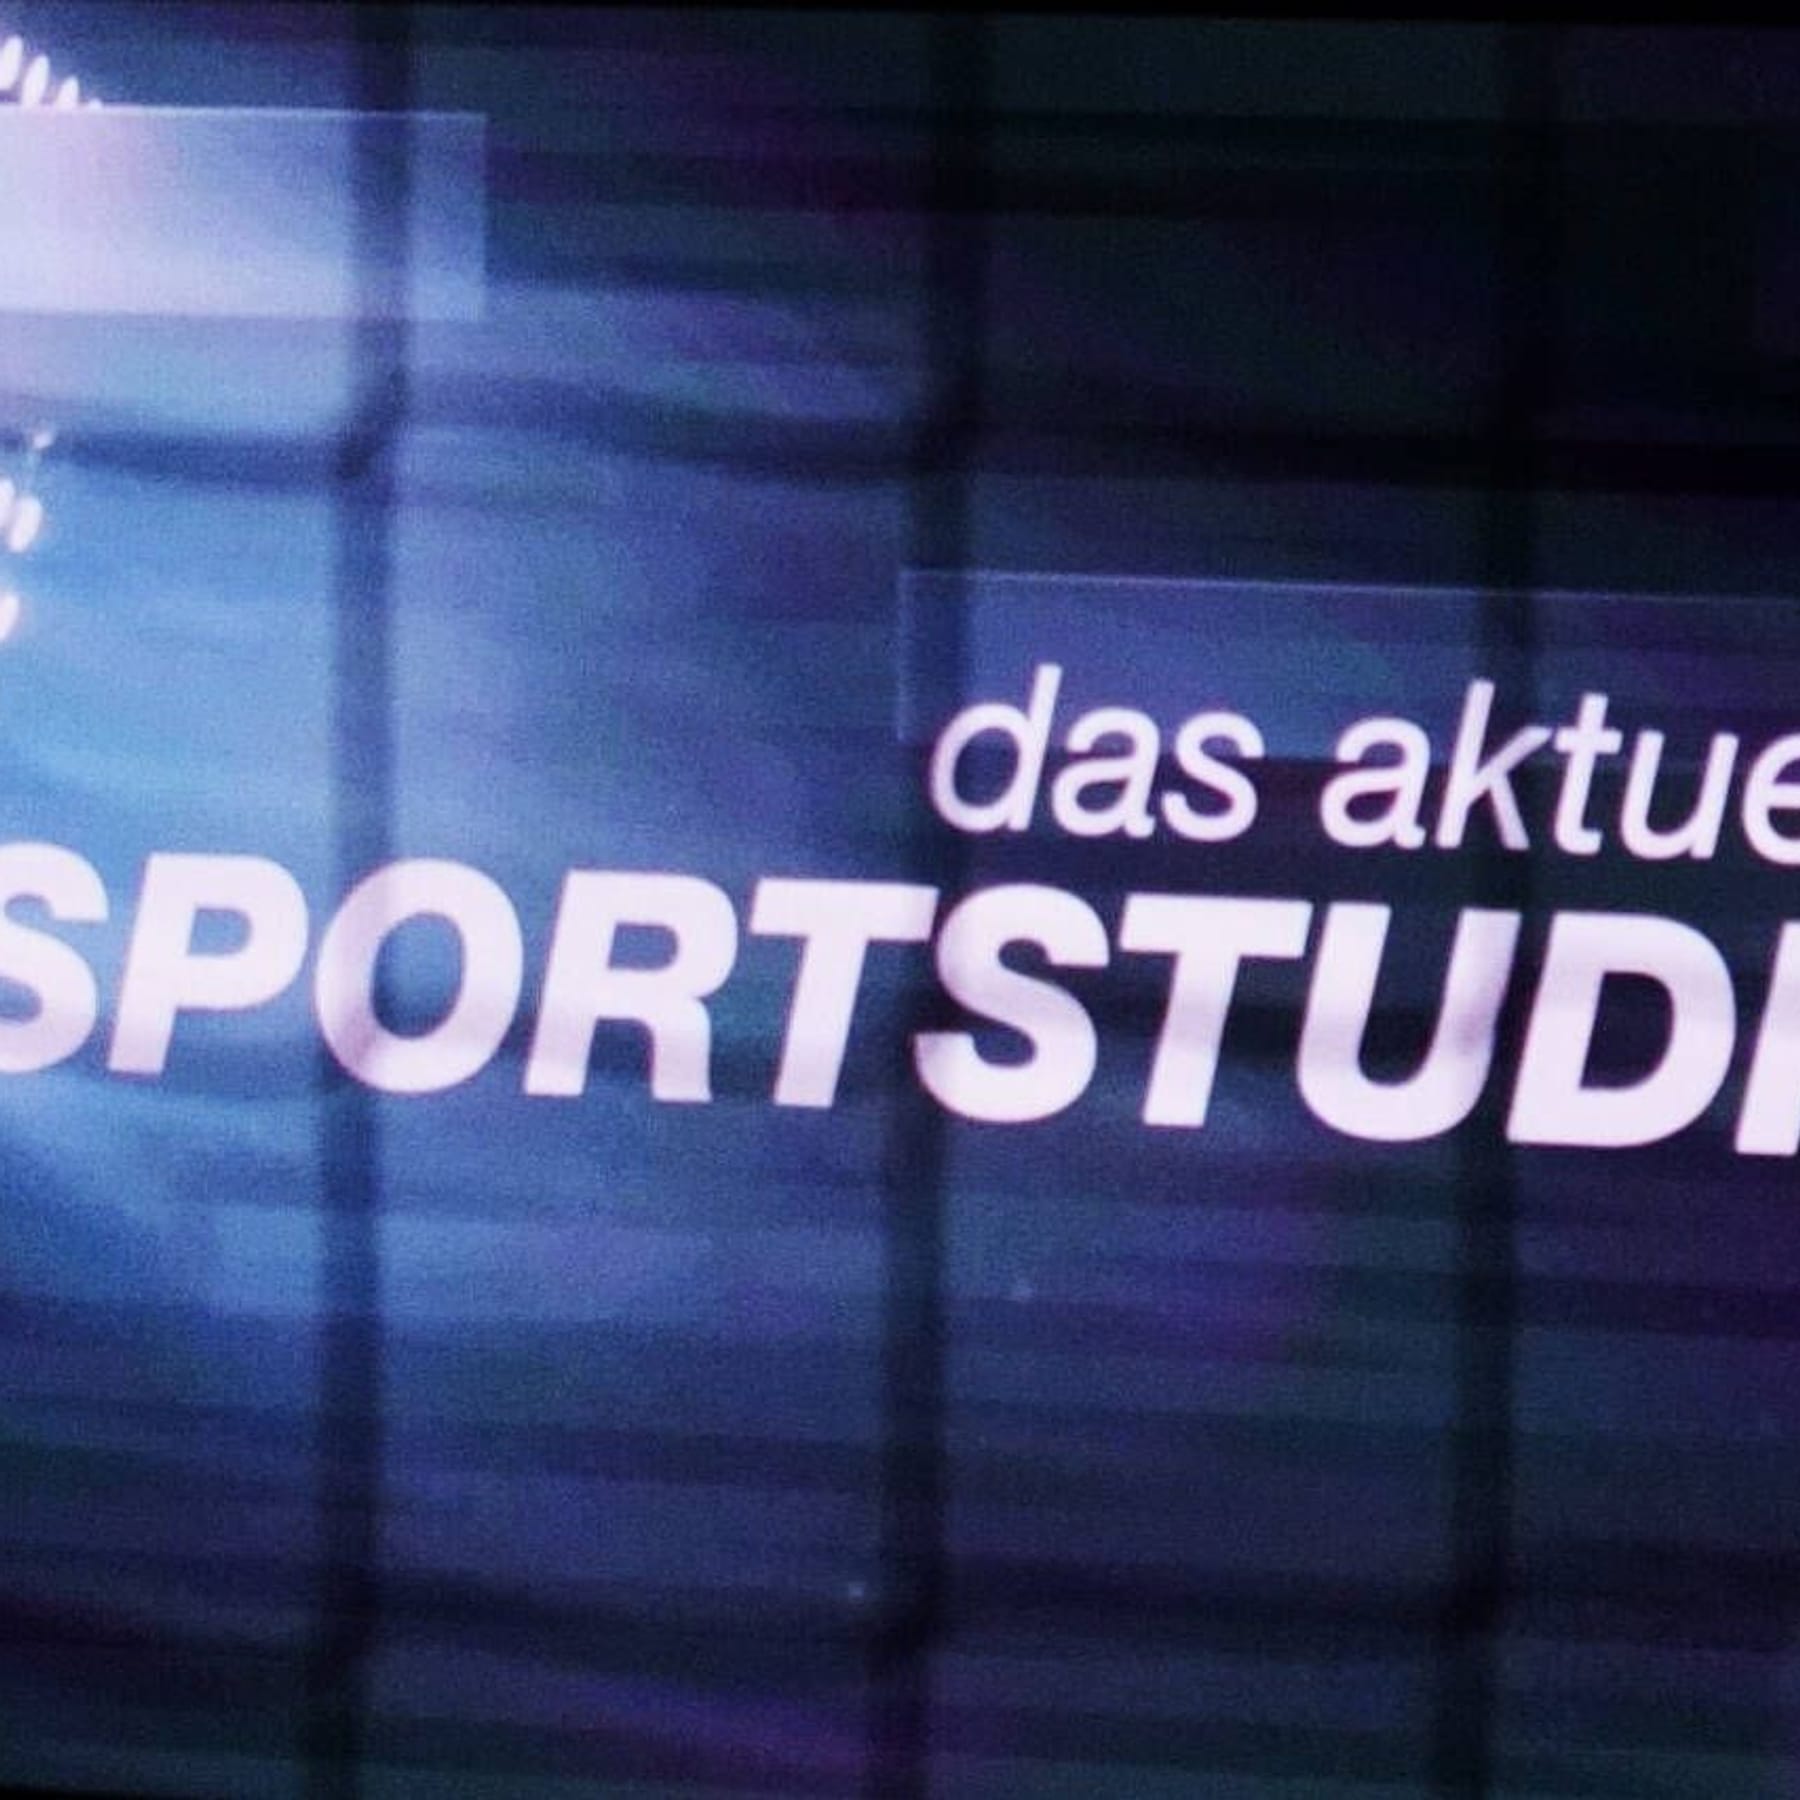 Nach dem Tod von Karl Senne Alle Moderatoren des ZDF-/